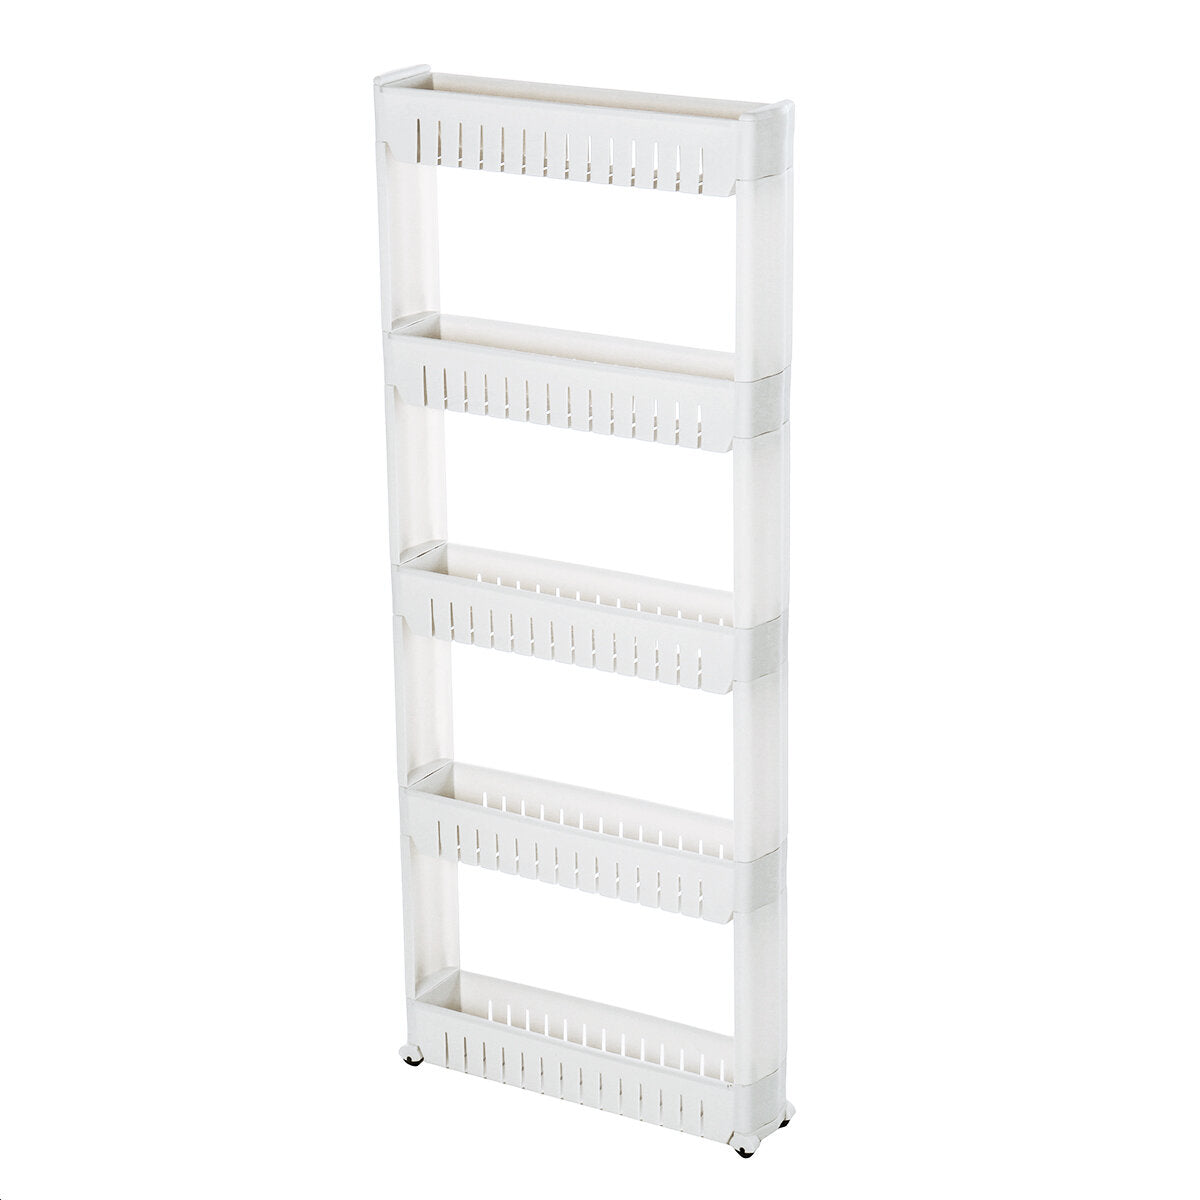 3/4 / 5-tier slim slide trolley storage holder rack organizer kitchen bathroom